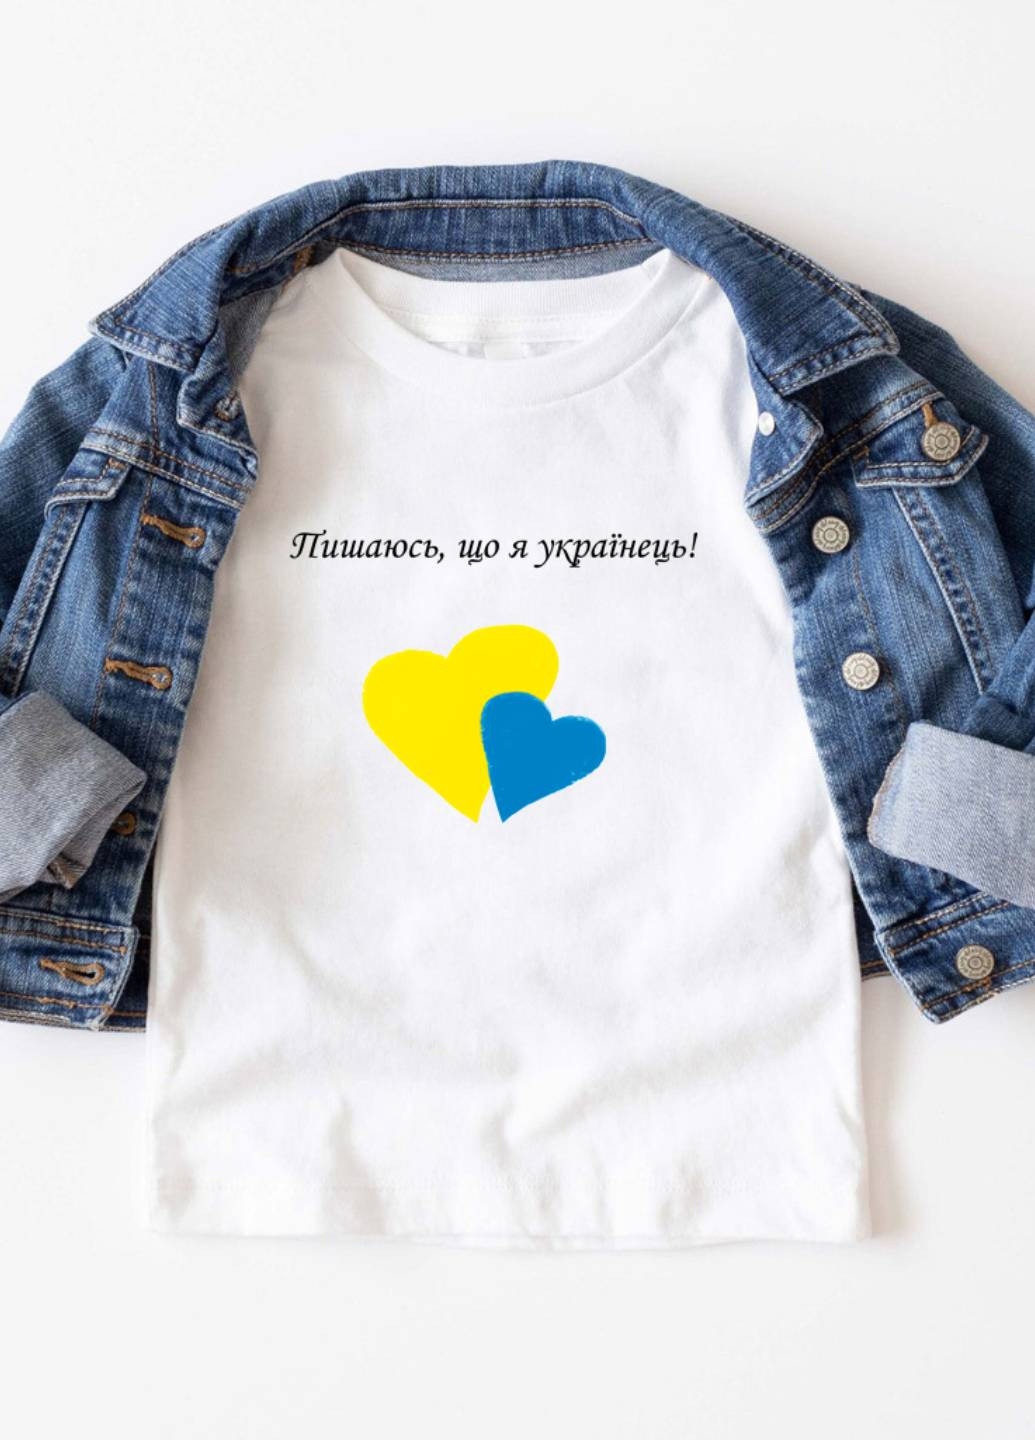 Белая демисезонная футболка детская белая для мальчика пишаюсь, що я українка! Love&Live